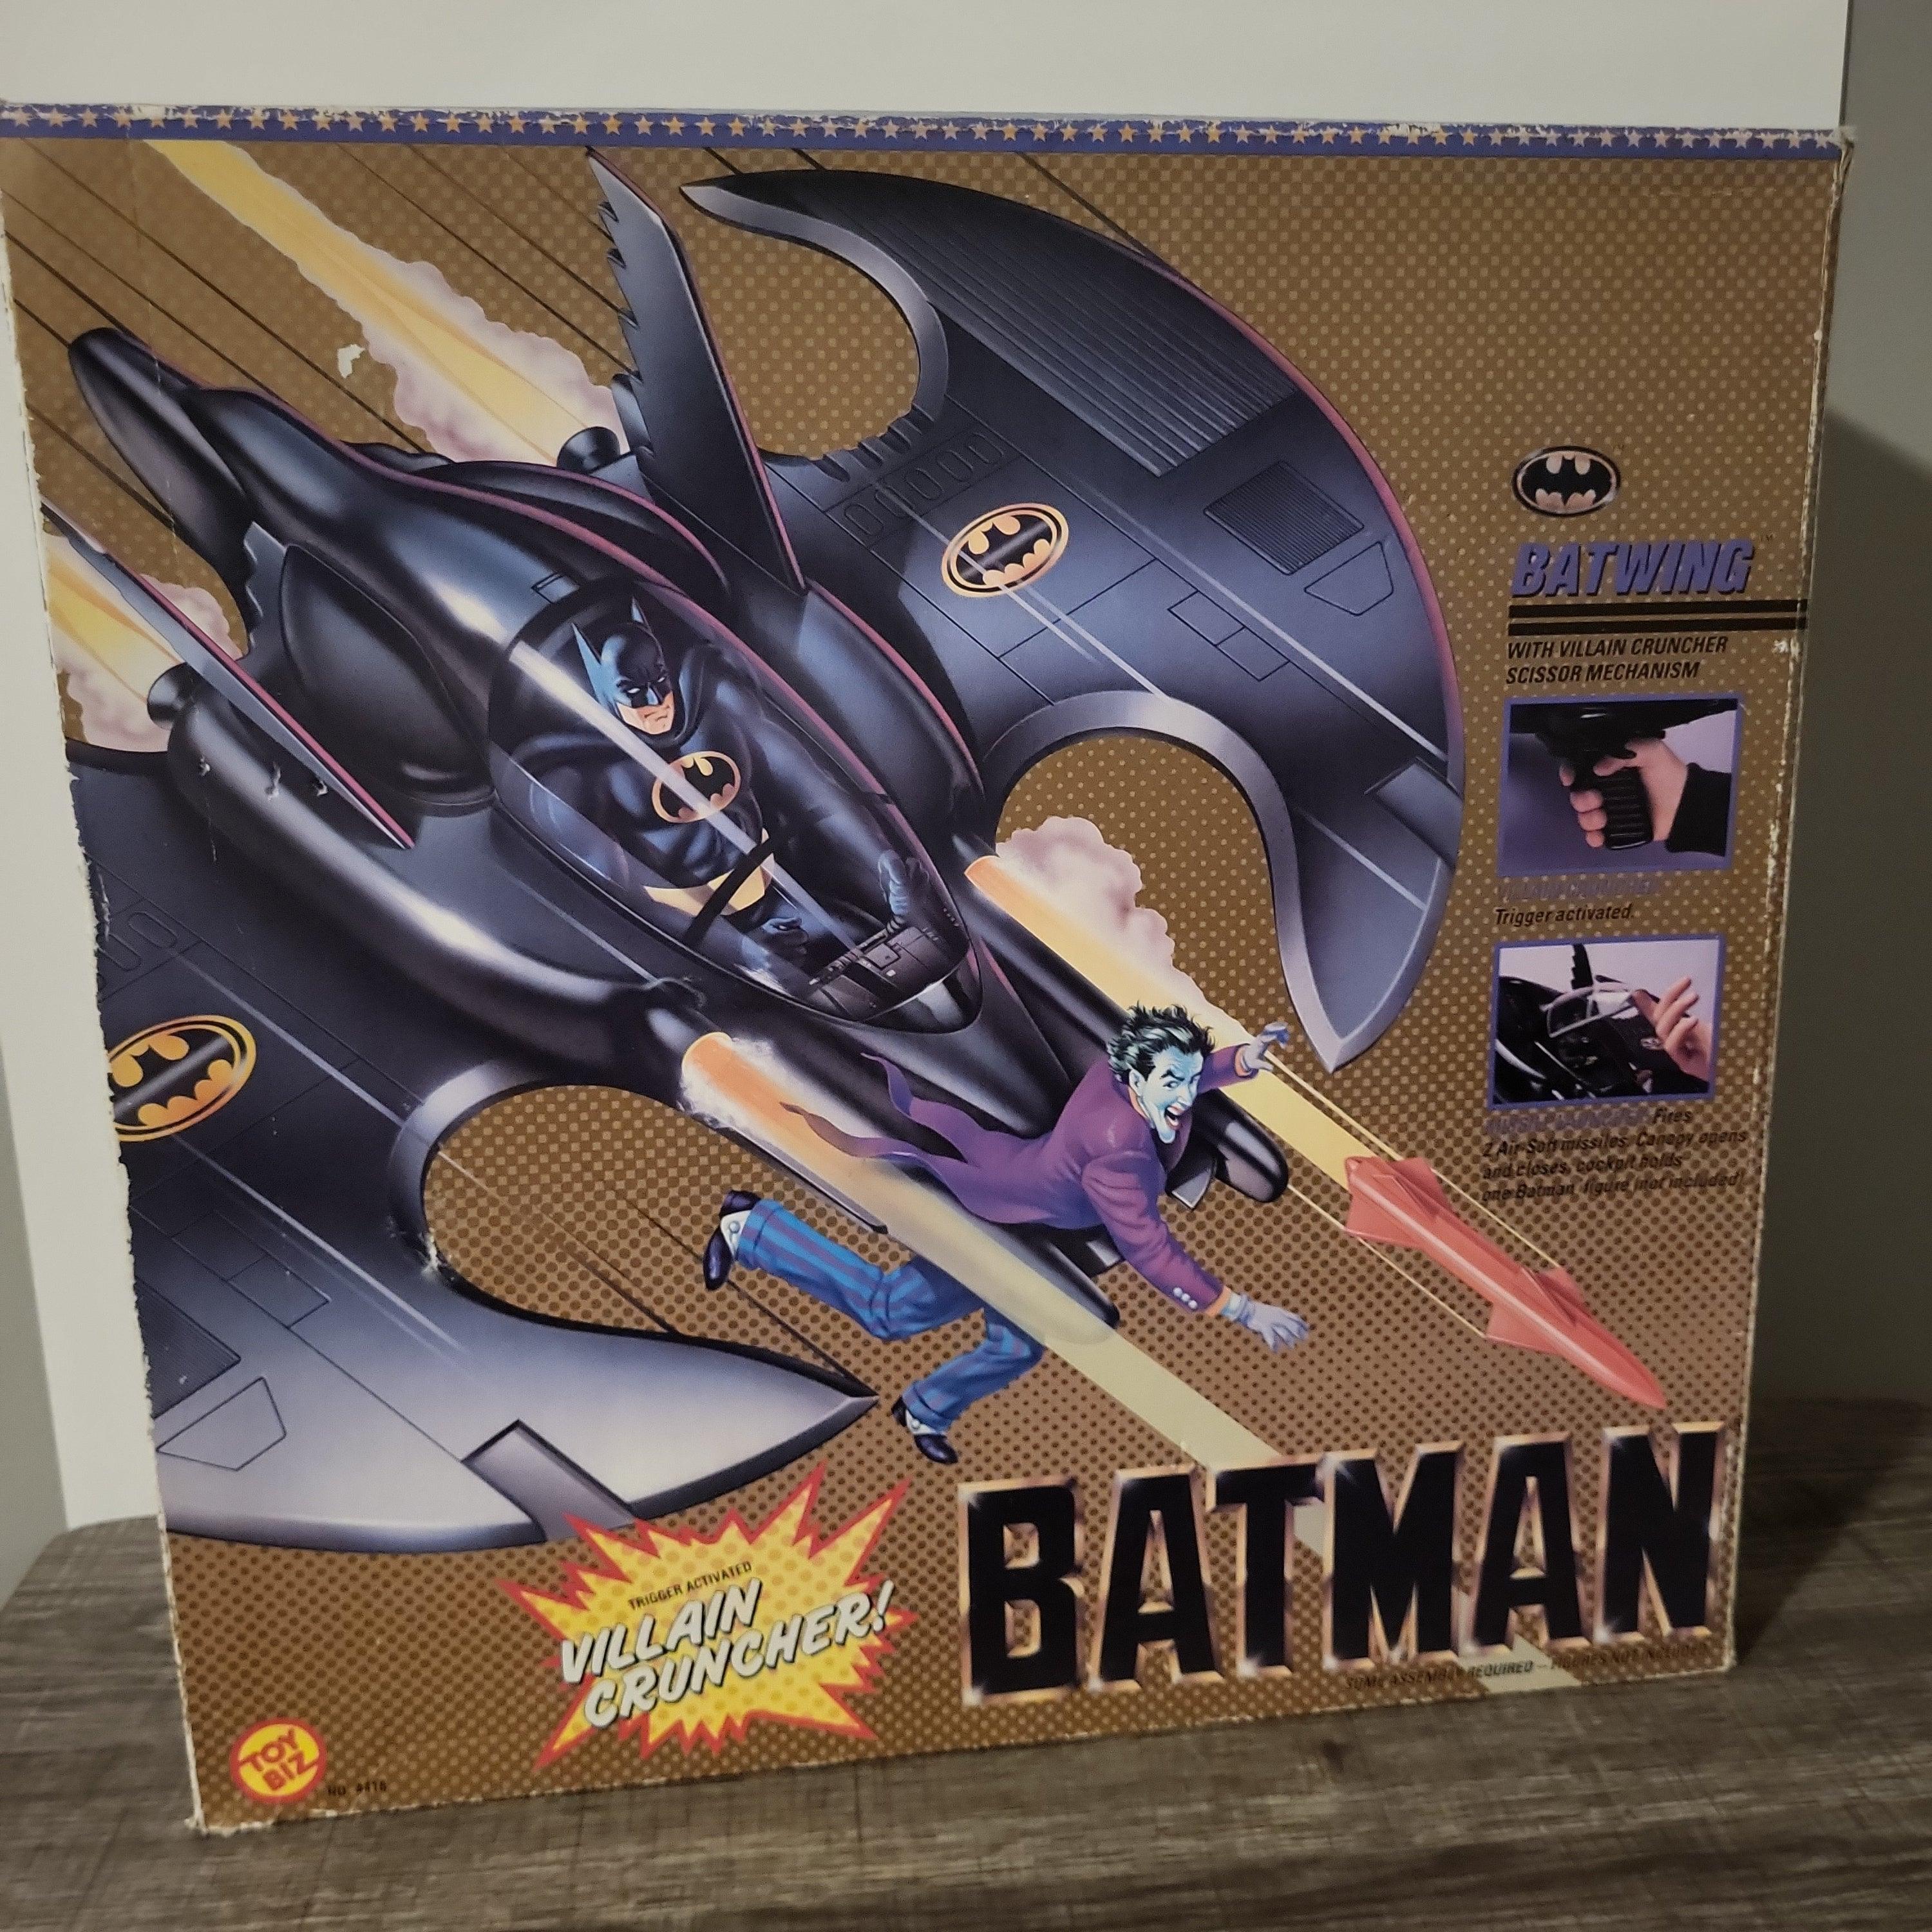 TOYBIZ- Batman Batwing - Rogue Toys